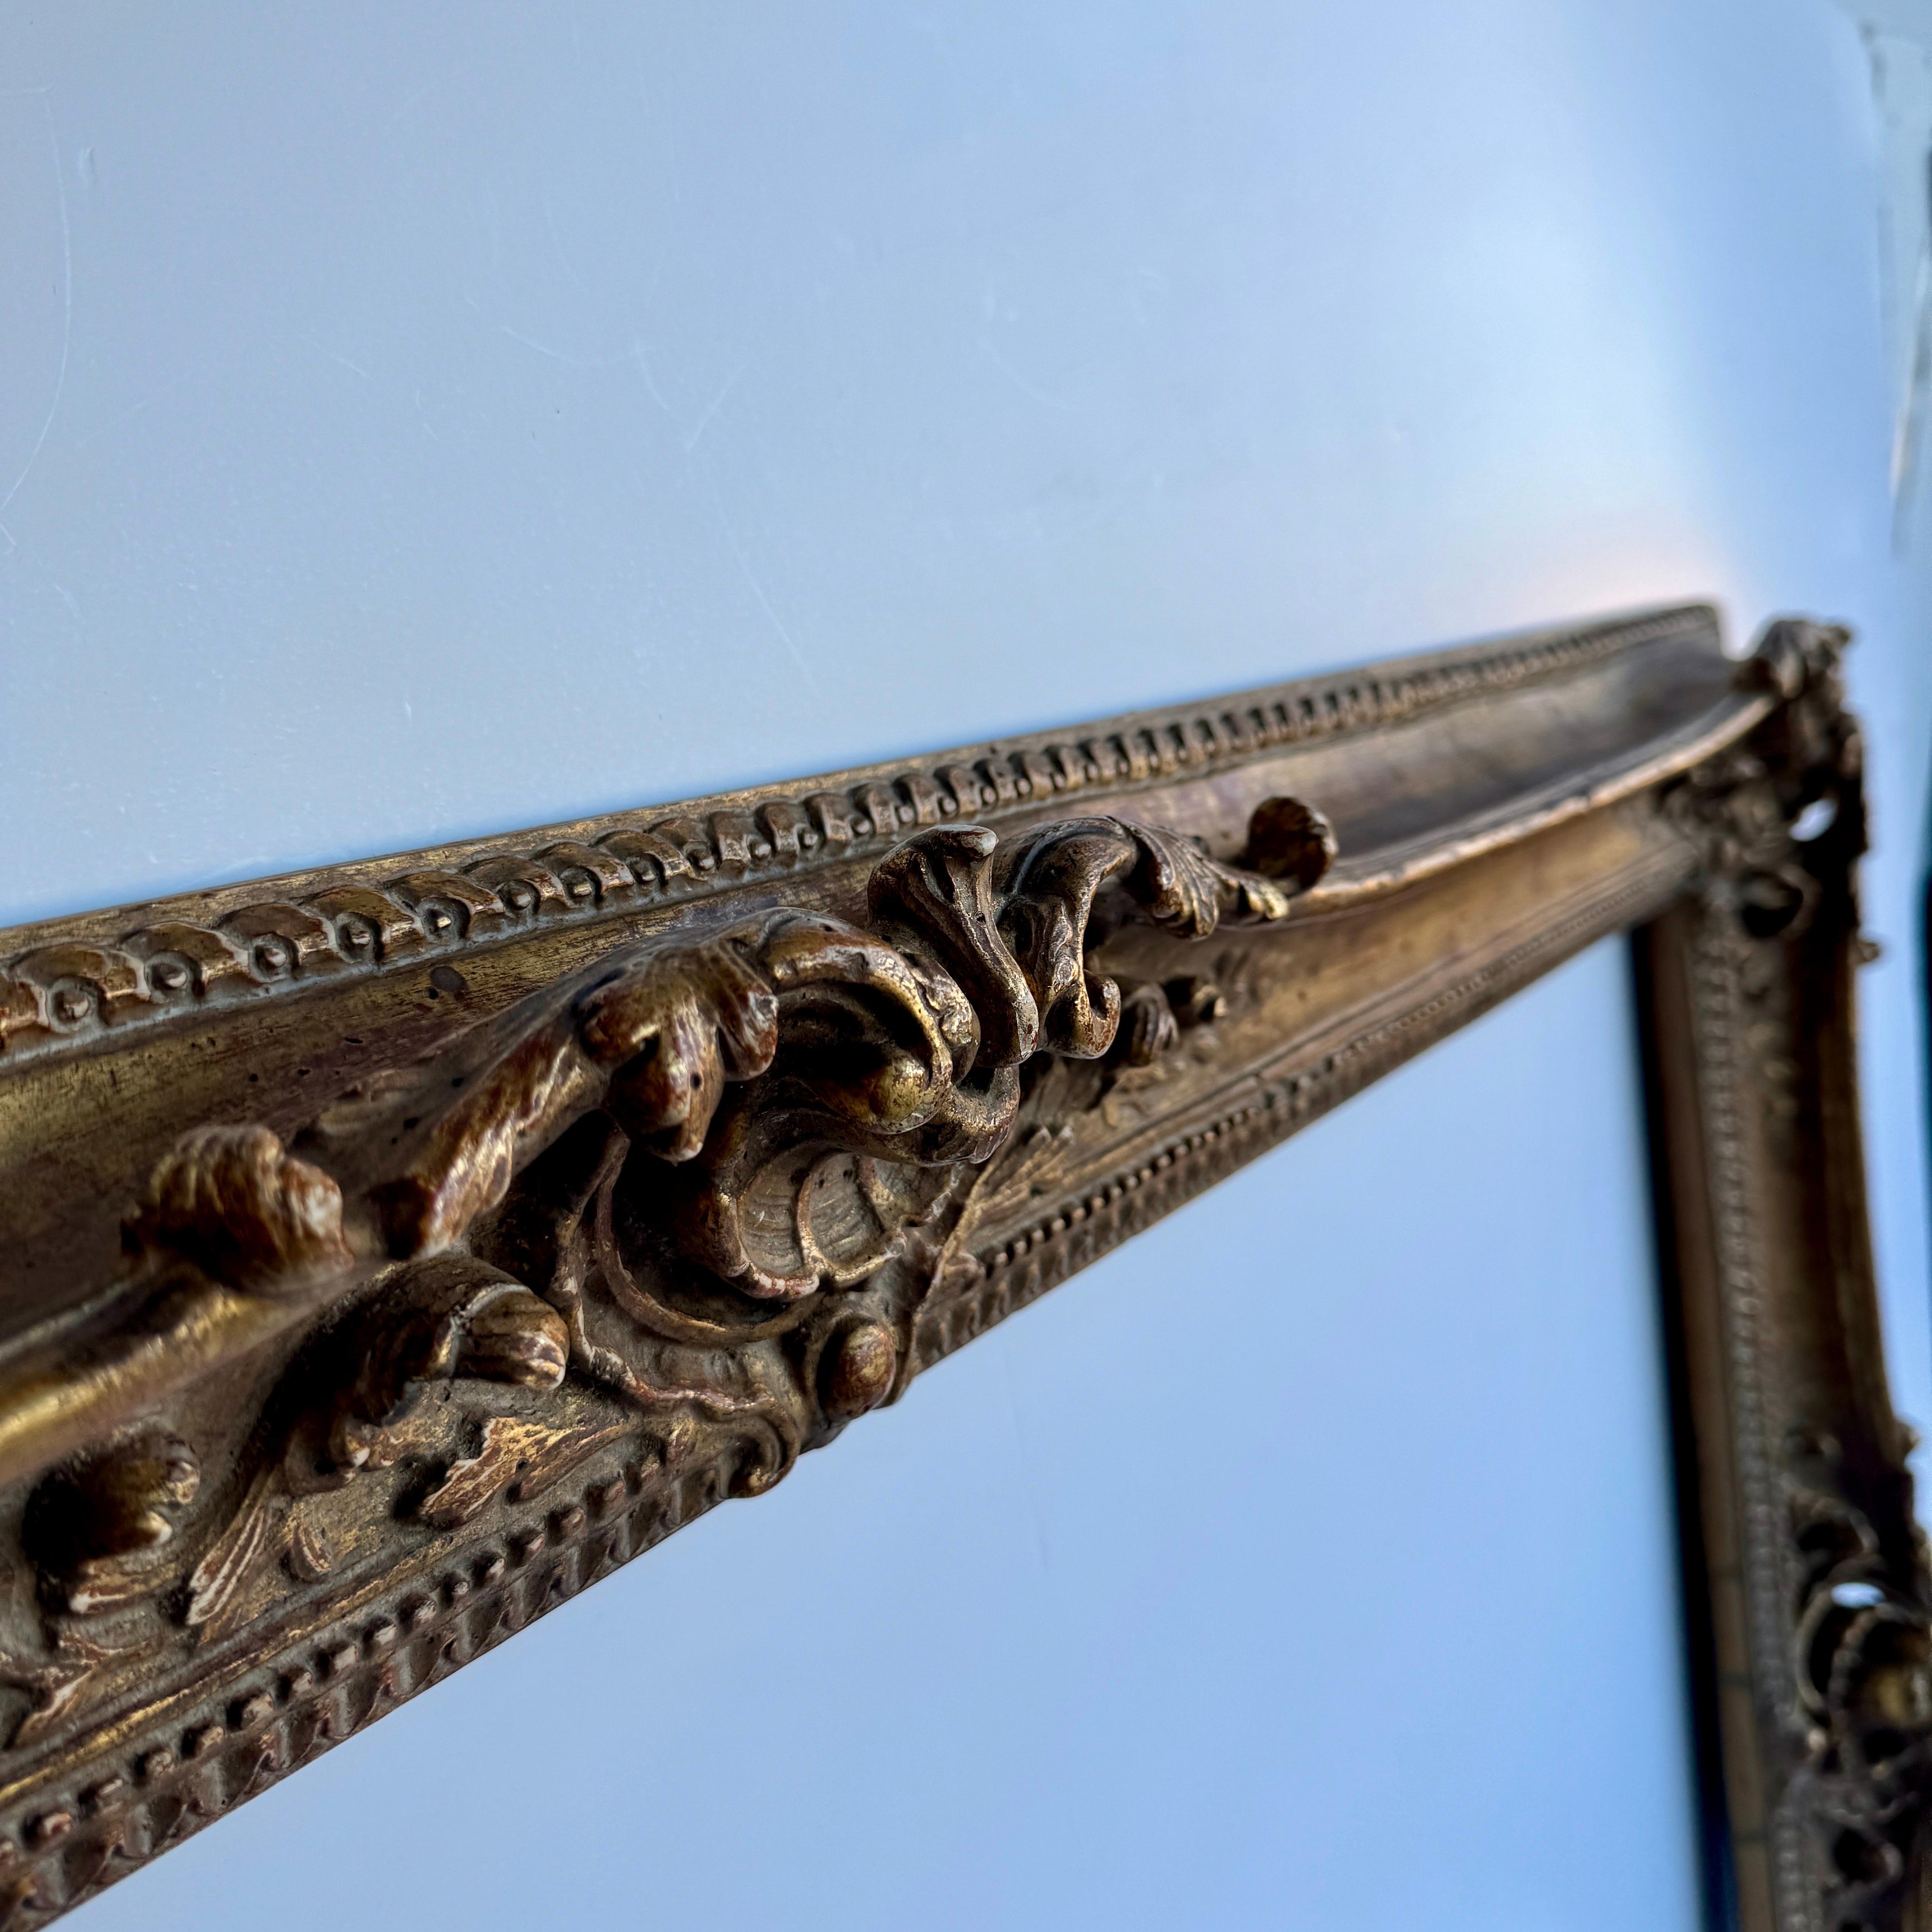 Grand cadre en bois sculpté et doré de style rococo français.  

Ce magnifique cadre orné, fabriqué à la main, présente de nombreux détails charmants. Cette pièce importante pourrait être utilisée pour une peinture à l'huile ou pour ajouter un